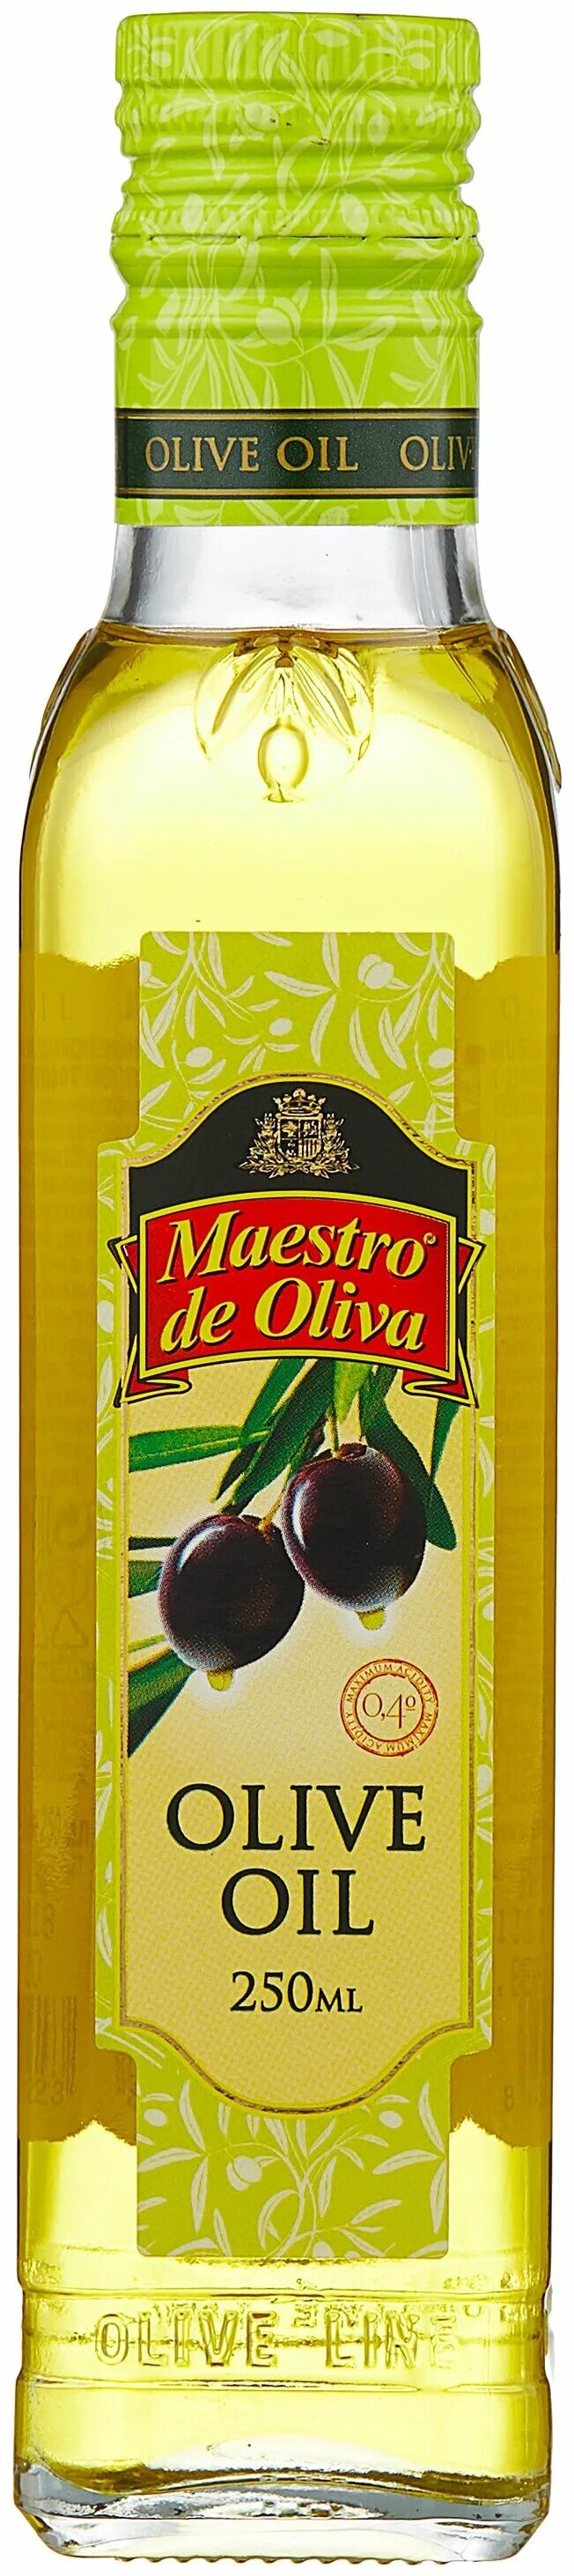 Maestro de oliva оливковое масло. Масло Maestro de Oliva 250мл оливковое. Maestro de Oliva масло. Масло "Maestro de Oliva " оливковое, 250 мл рафинированное. Масло оливковое Maestro de Oliva 500мл.